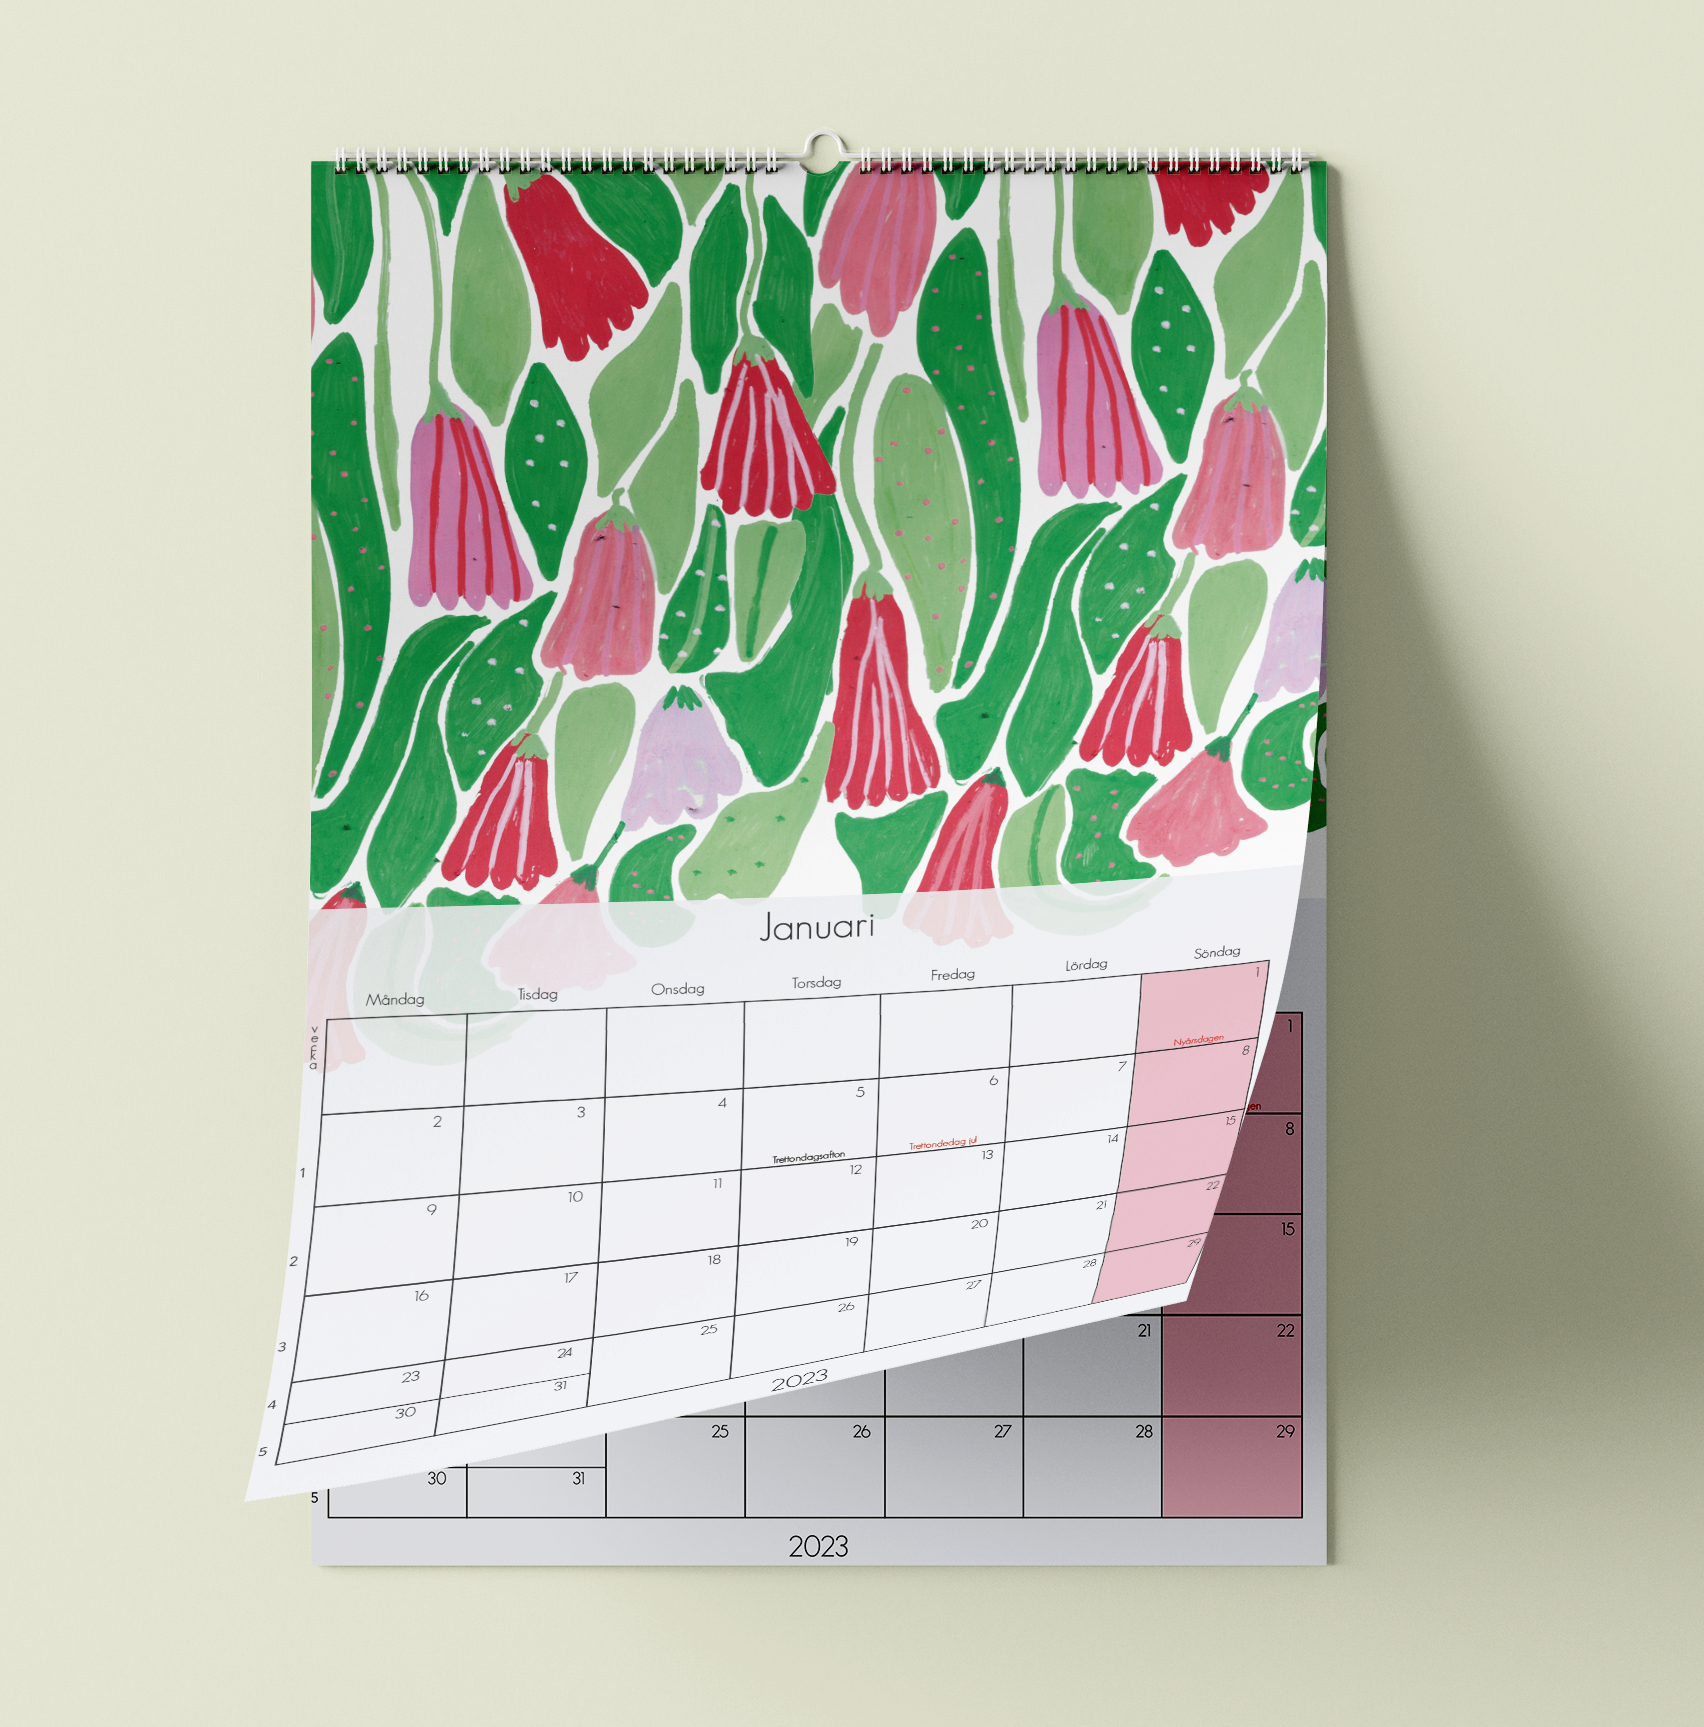 Kalender 2023 - Din blomstrande väggkalender med konst av Jessica Jämting